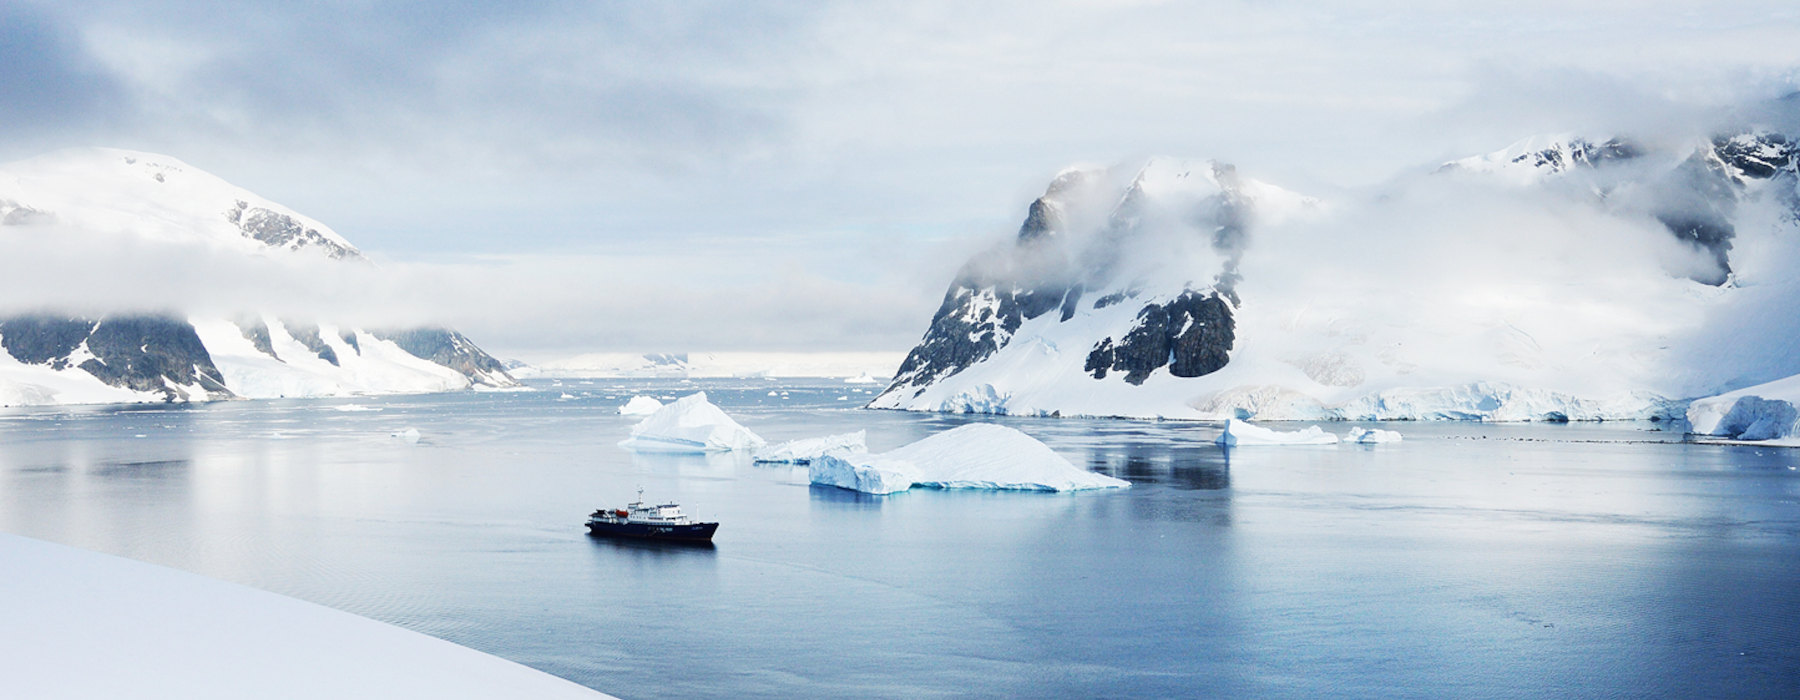 Antarctica<br class="hidden-md hidden-lg" /> Travel Bucket List